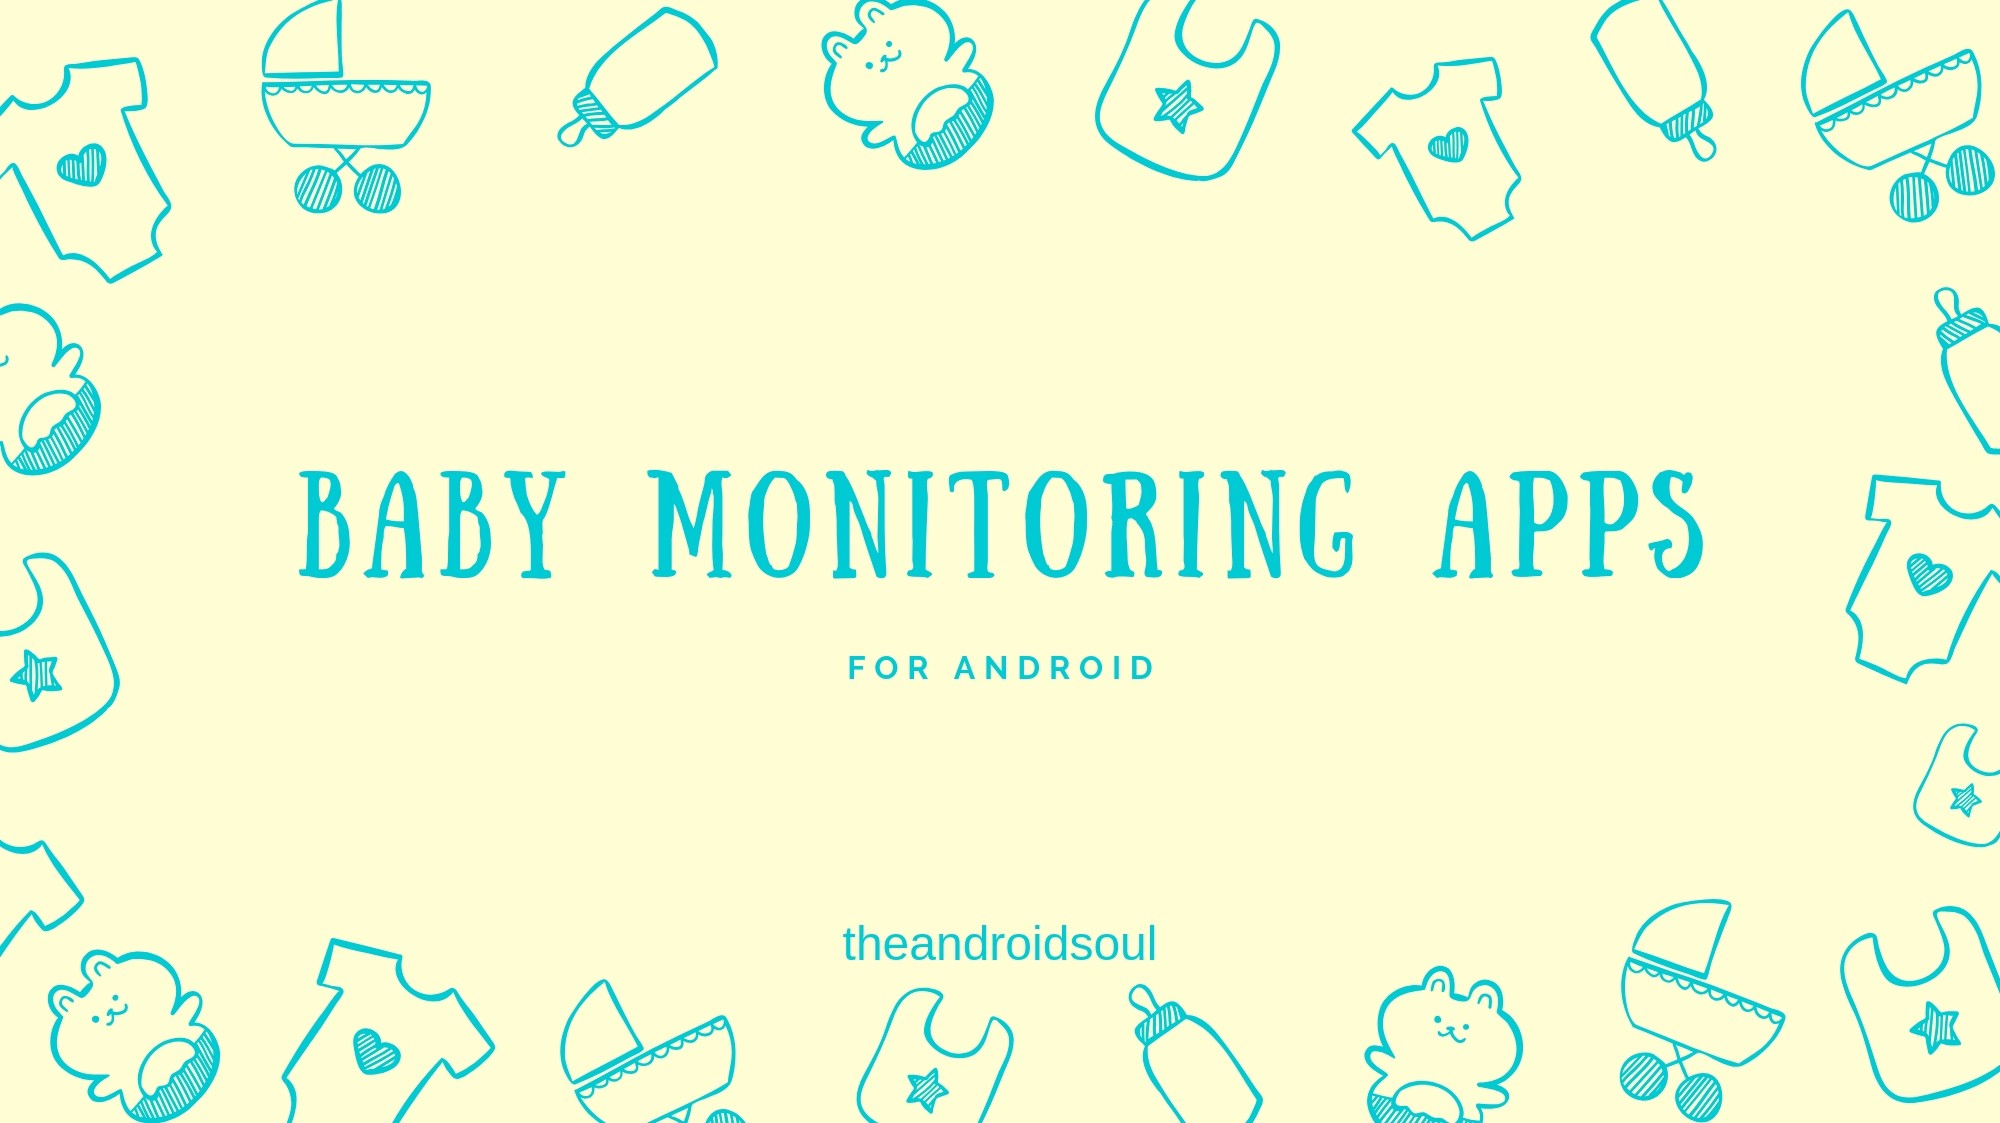 ¡Aquí están las 4 mejores aplicaciones de Android para monitorear a su bebé y recibir alertas si se despierta!